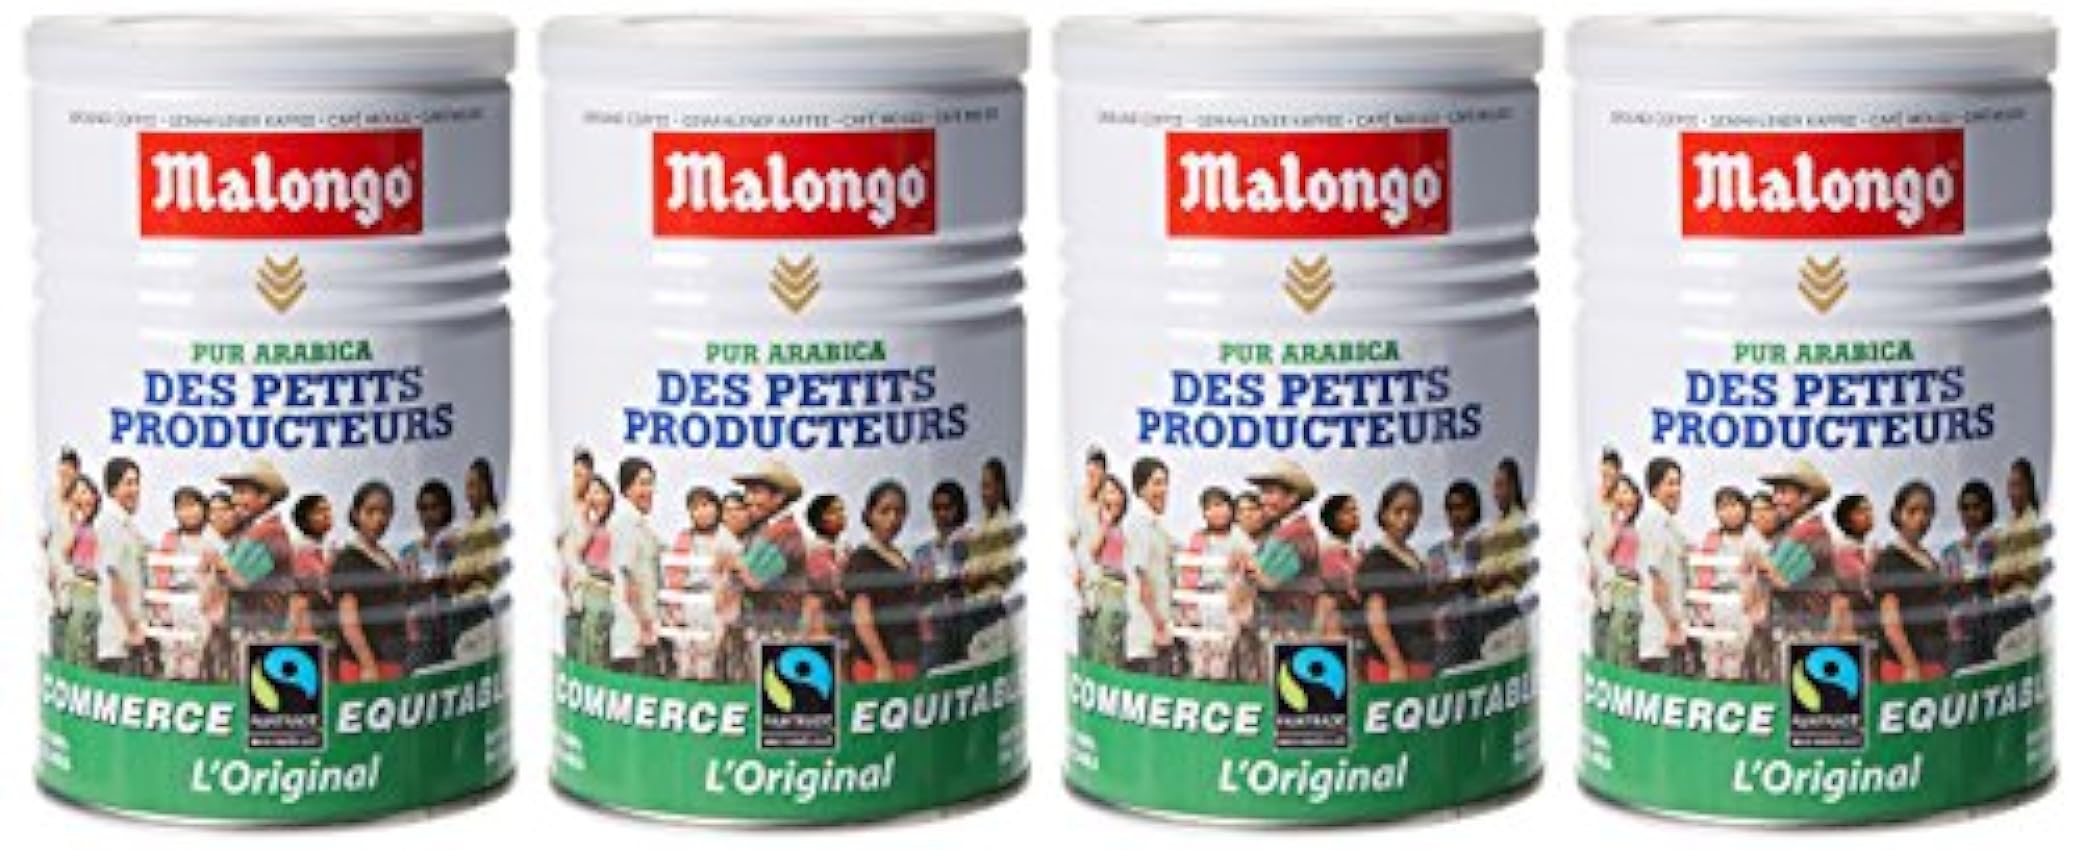 Malongo Café Pur Arabica Des Petits Producteurs 250 g - Lot de 4 NVcE0Ces